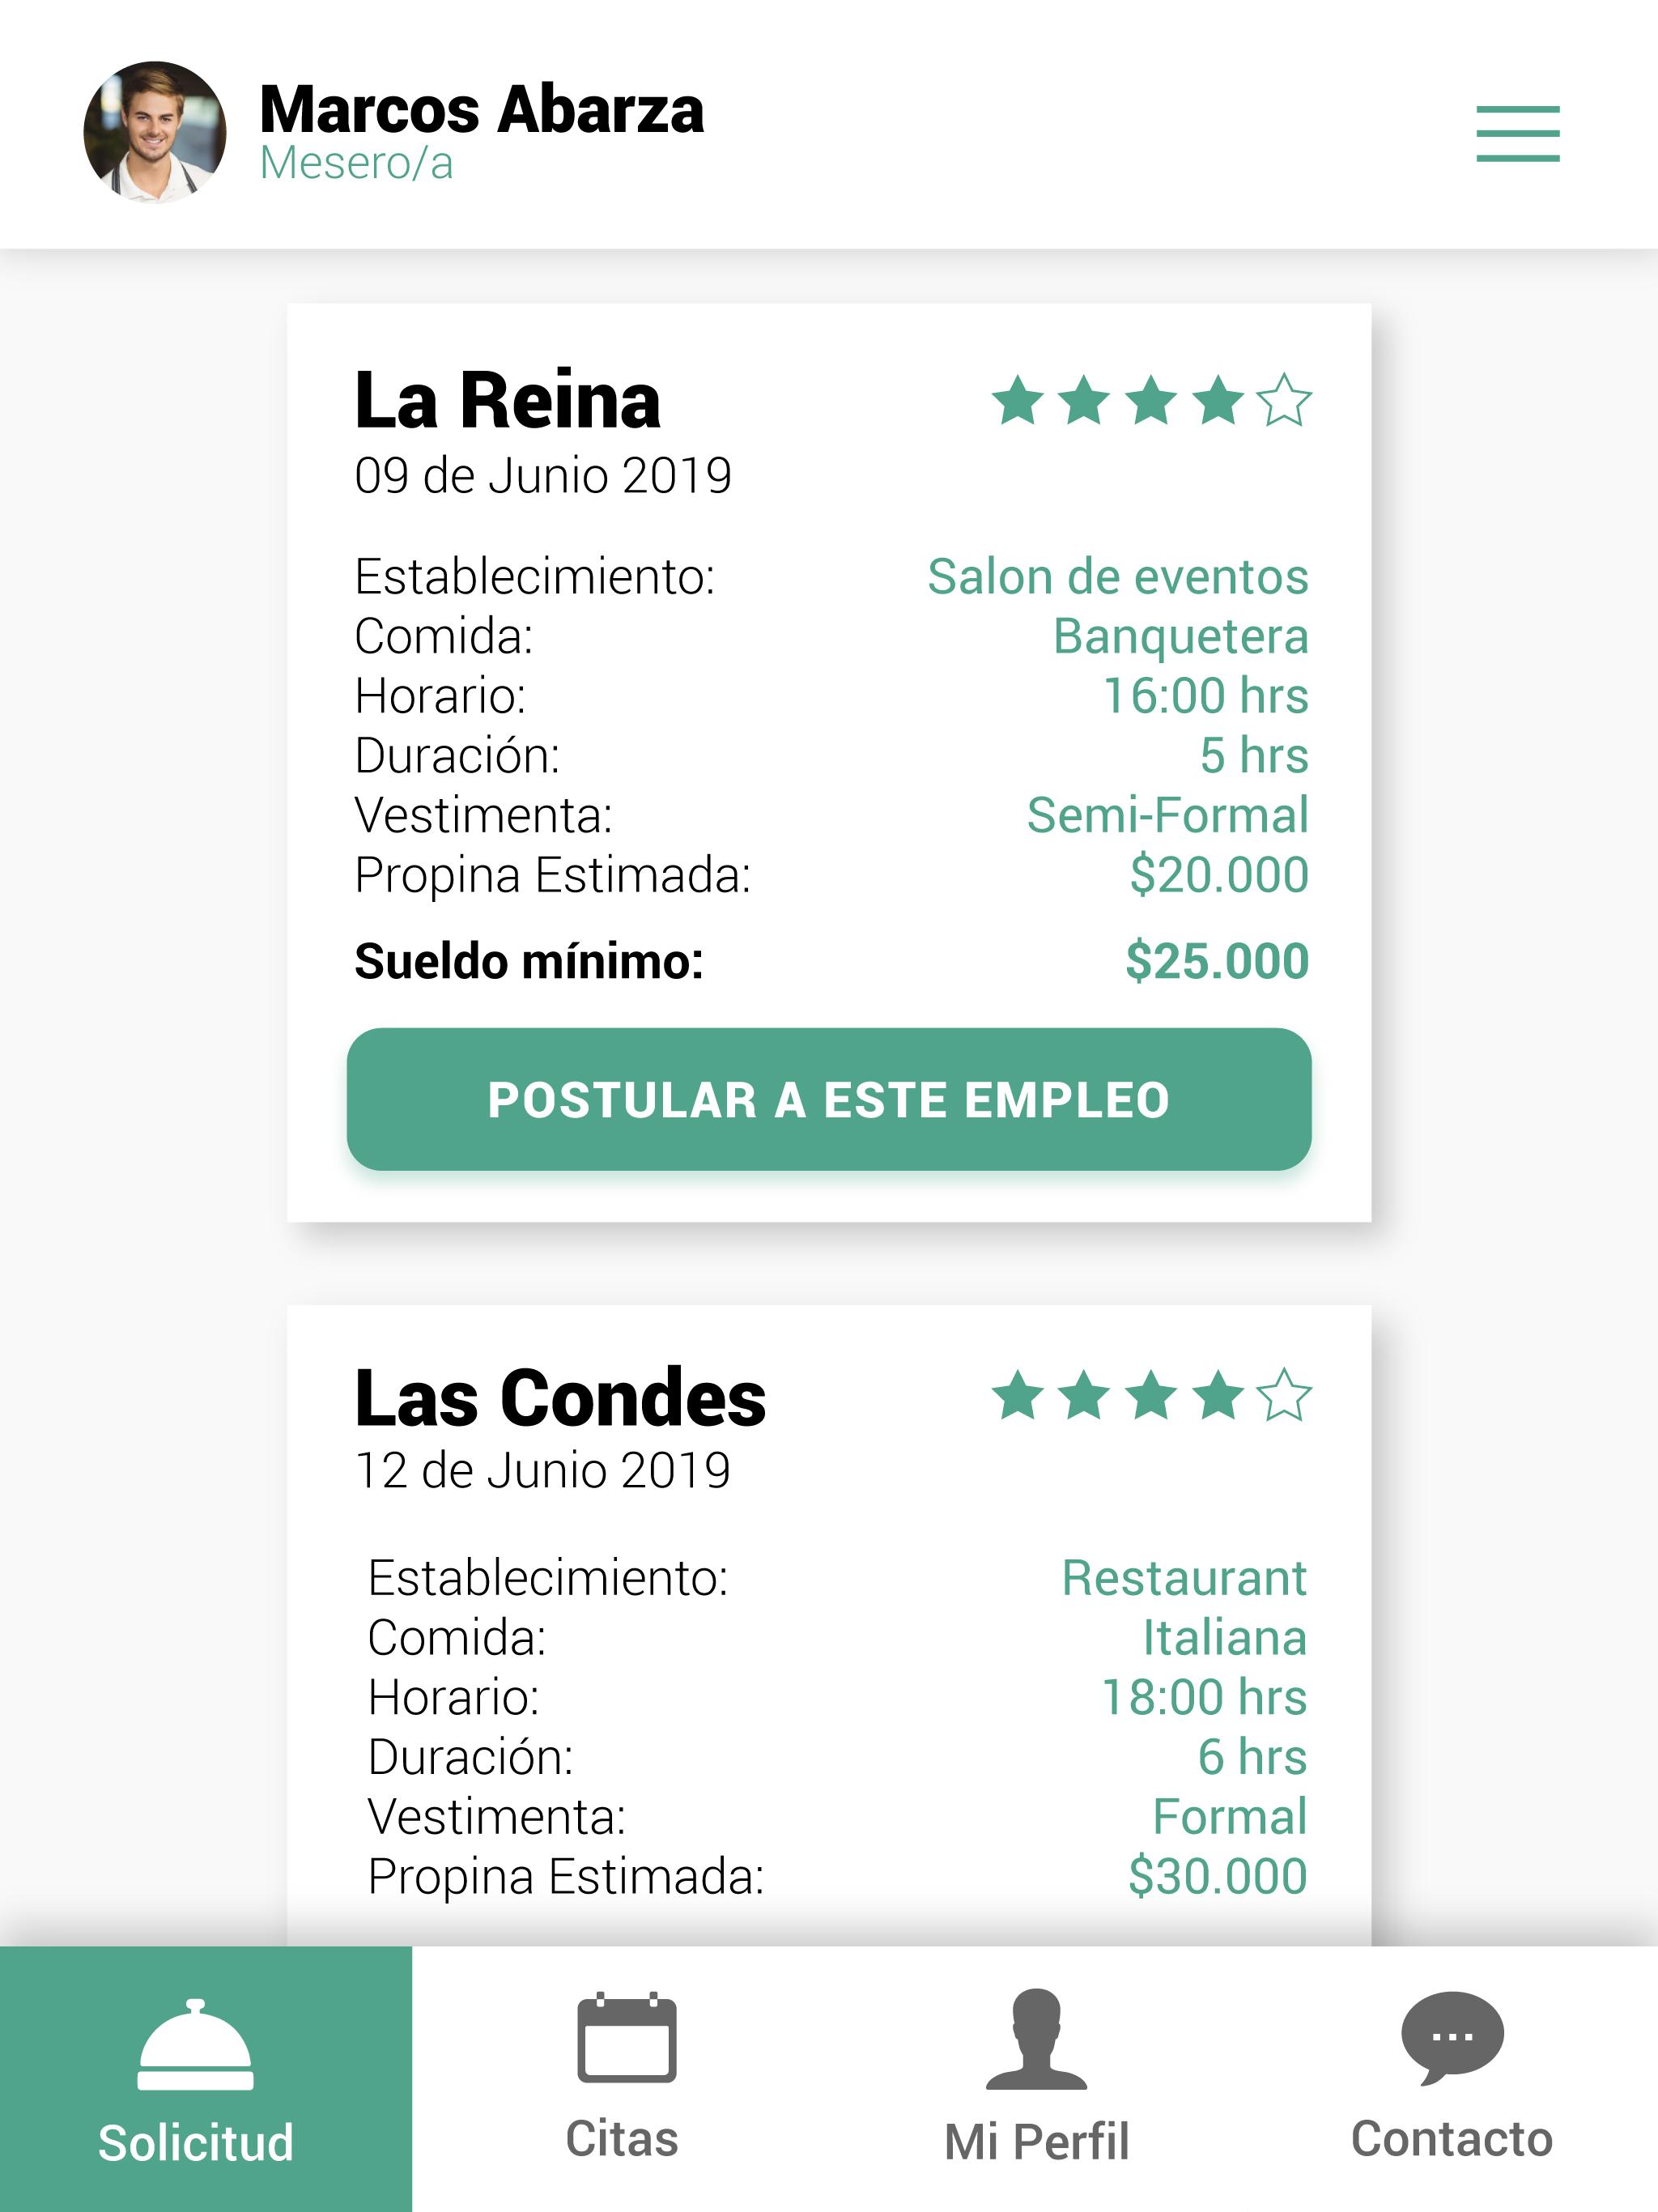 Featured image of post El Mesero Online Completa Rodrigo sada vadhir derbez quiere ser millonario para llevar la vida de lujo y sofisticaci n que ve en los clientes del restaurante en el que trabaja